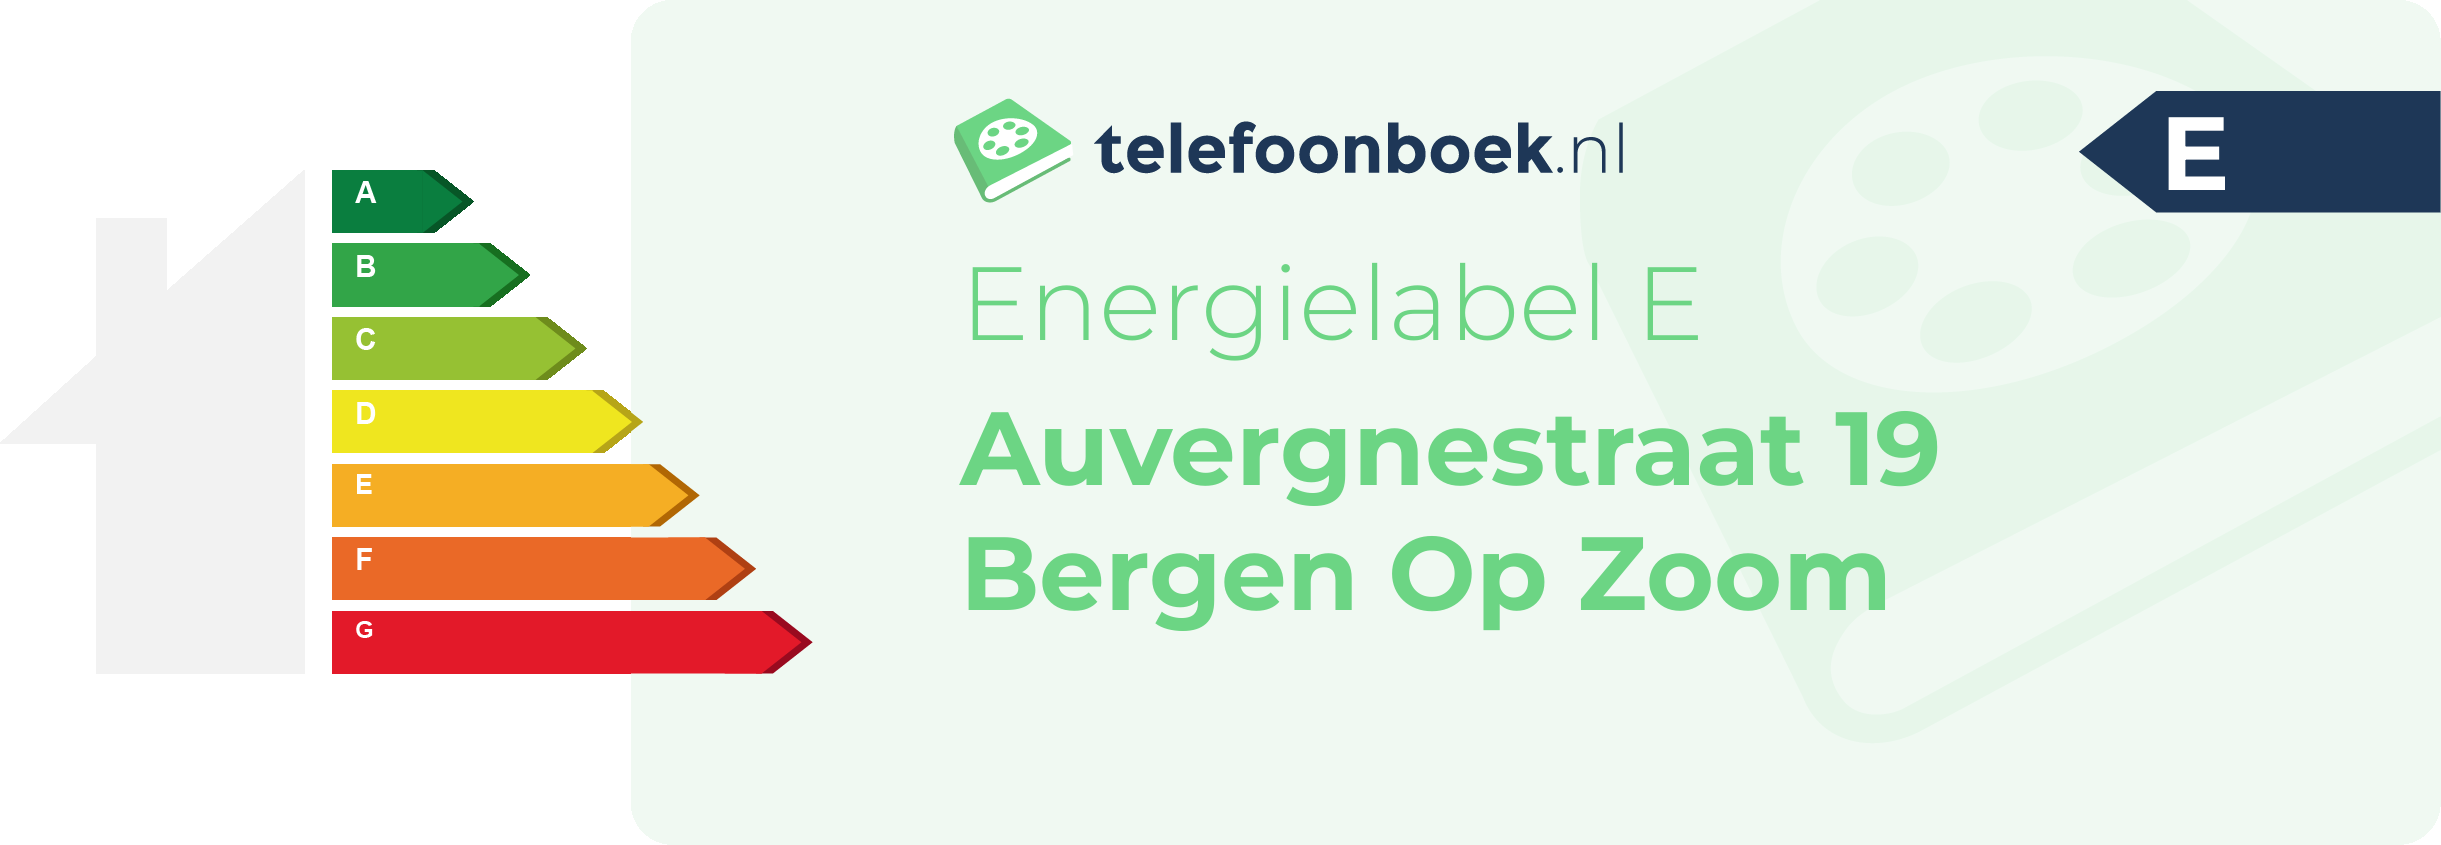 Energielabel Auvergnestraat 19 Bergen Op Zoom